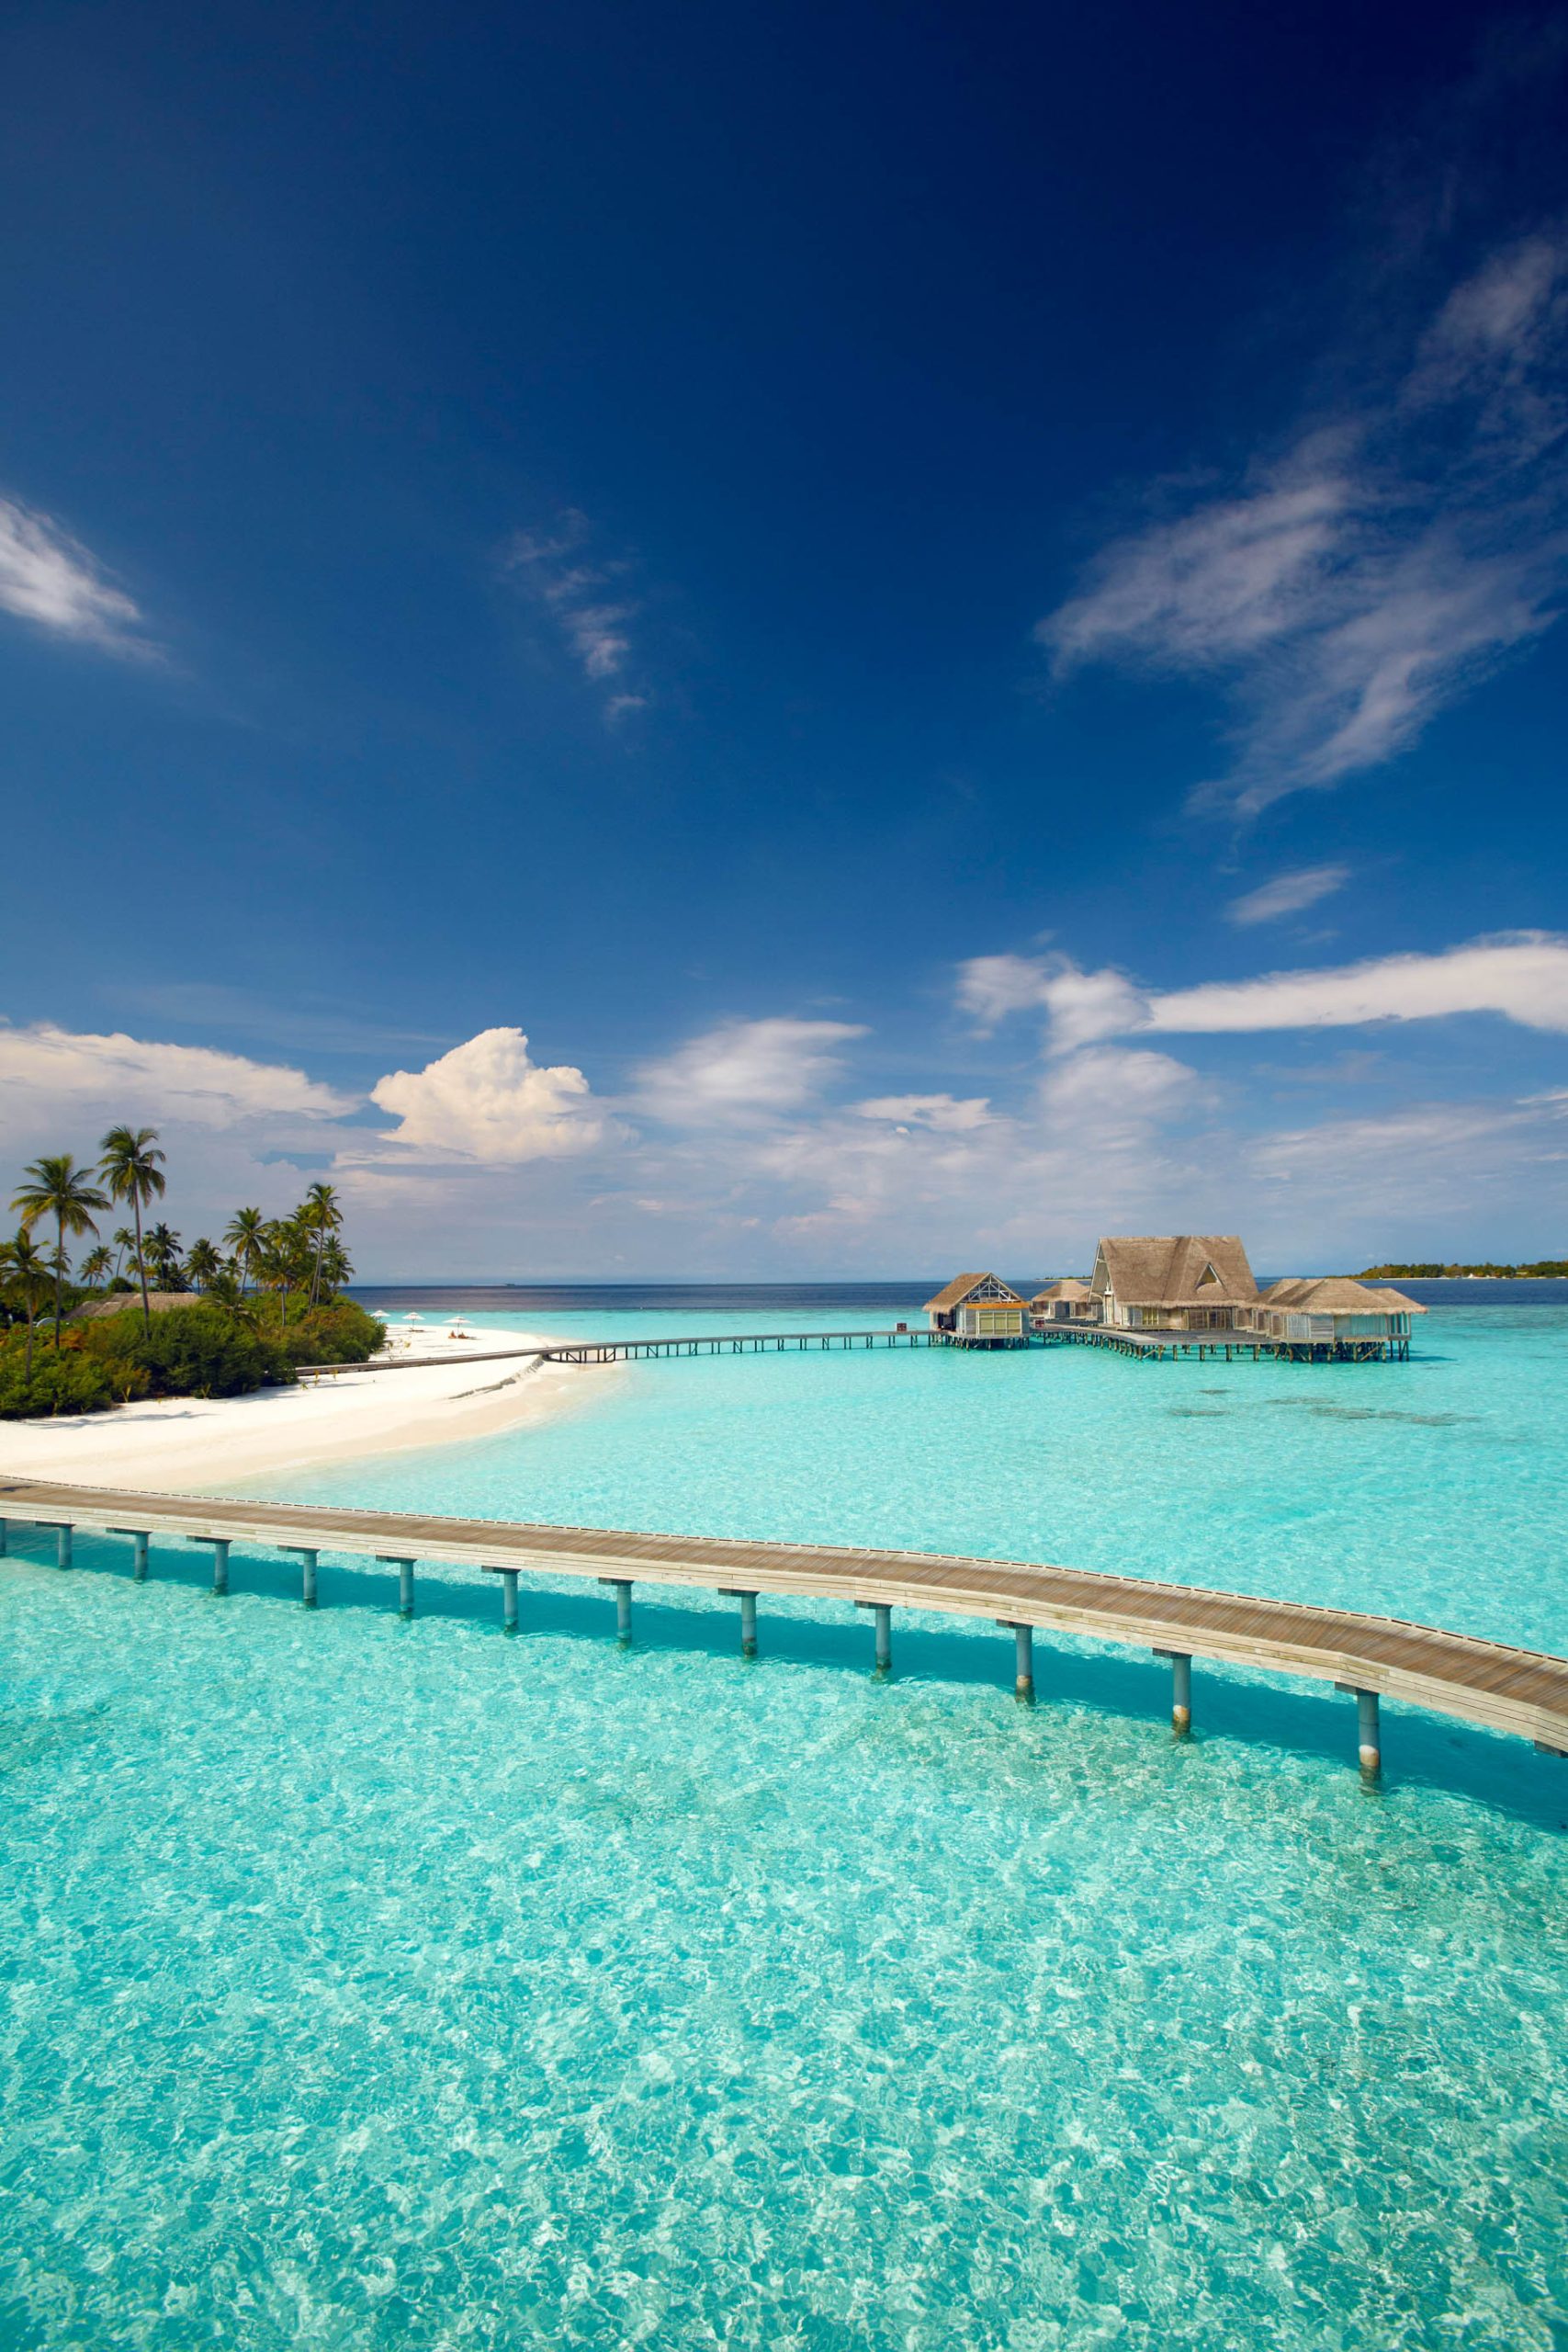 Anantara Kihavah Maldives Villas Resort – Baa Atoll, Maldives – Lagoon